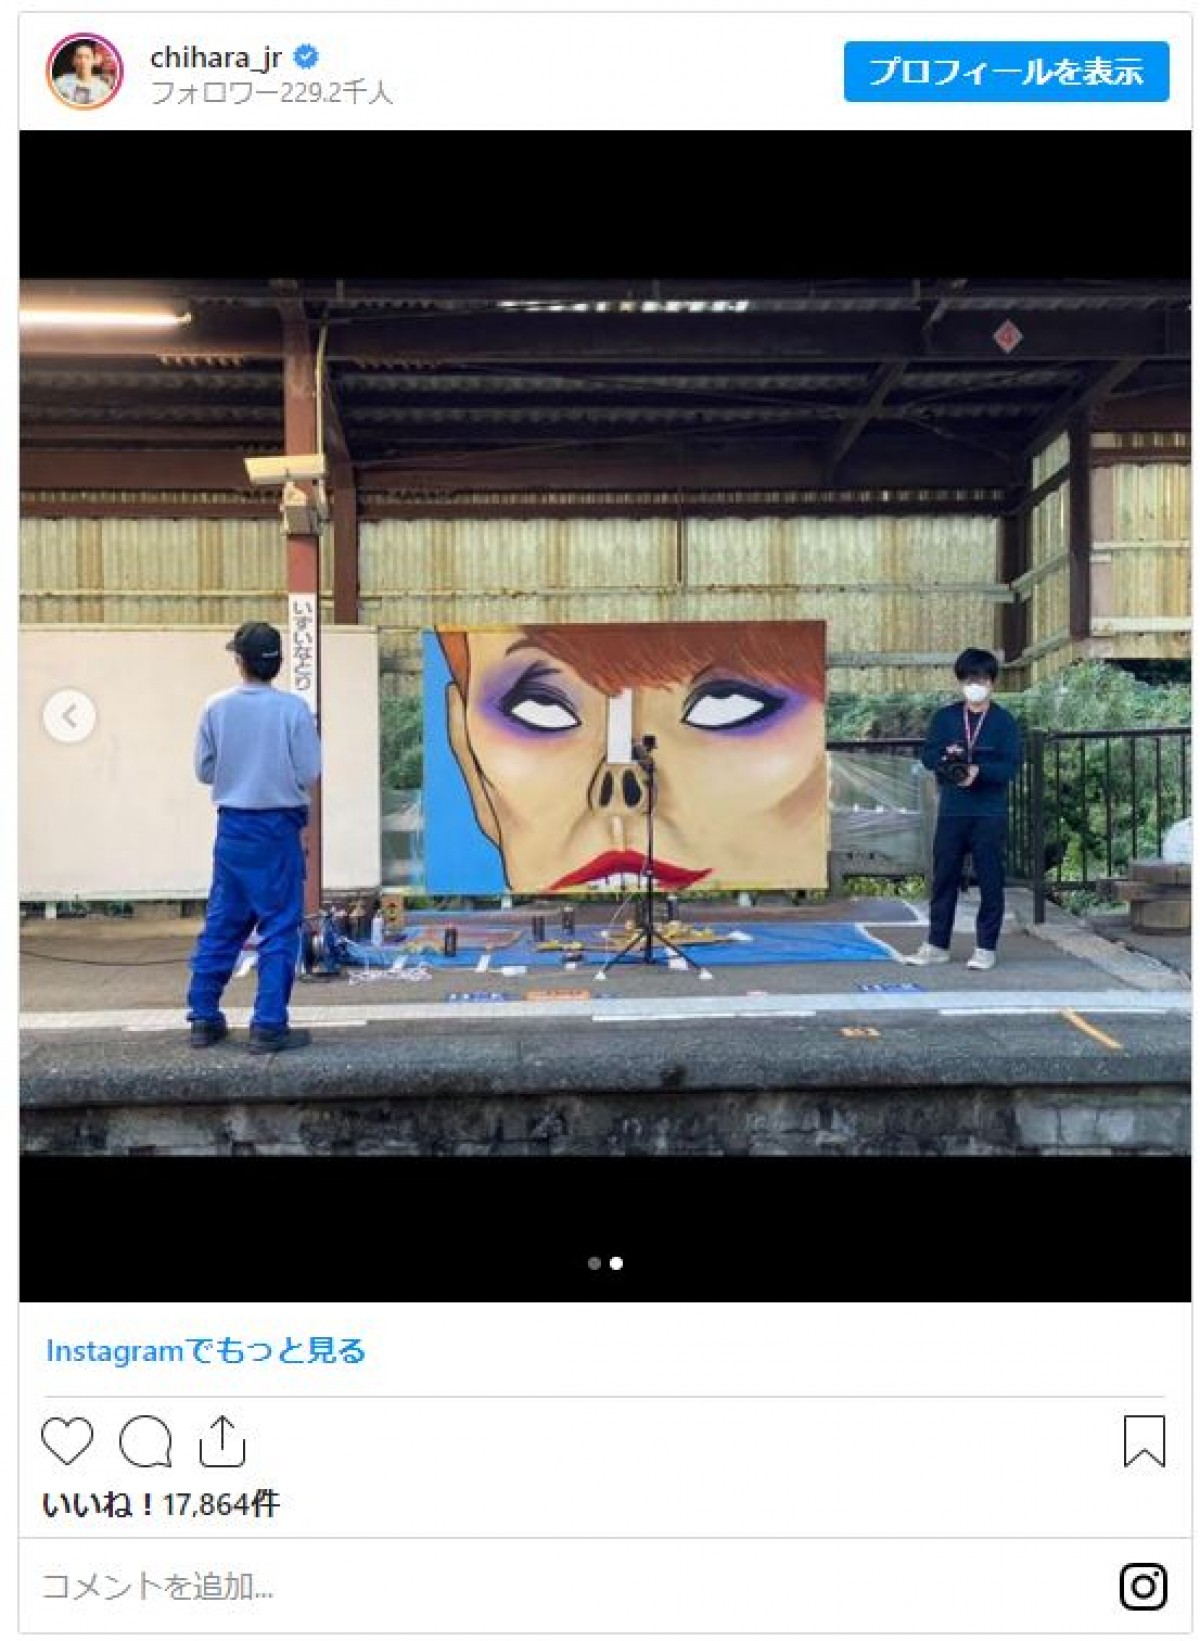 千原ジュニアが描いた“研ナオコ”に反響「誰だか一瞬でわかりました！」「傑作」の声